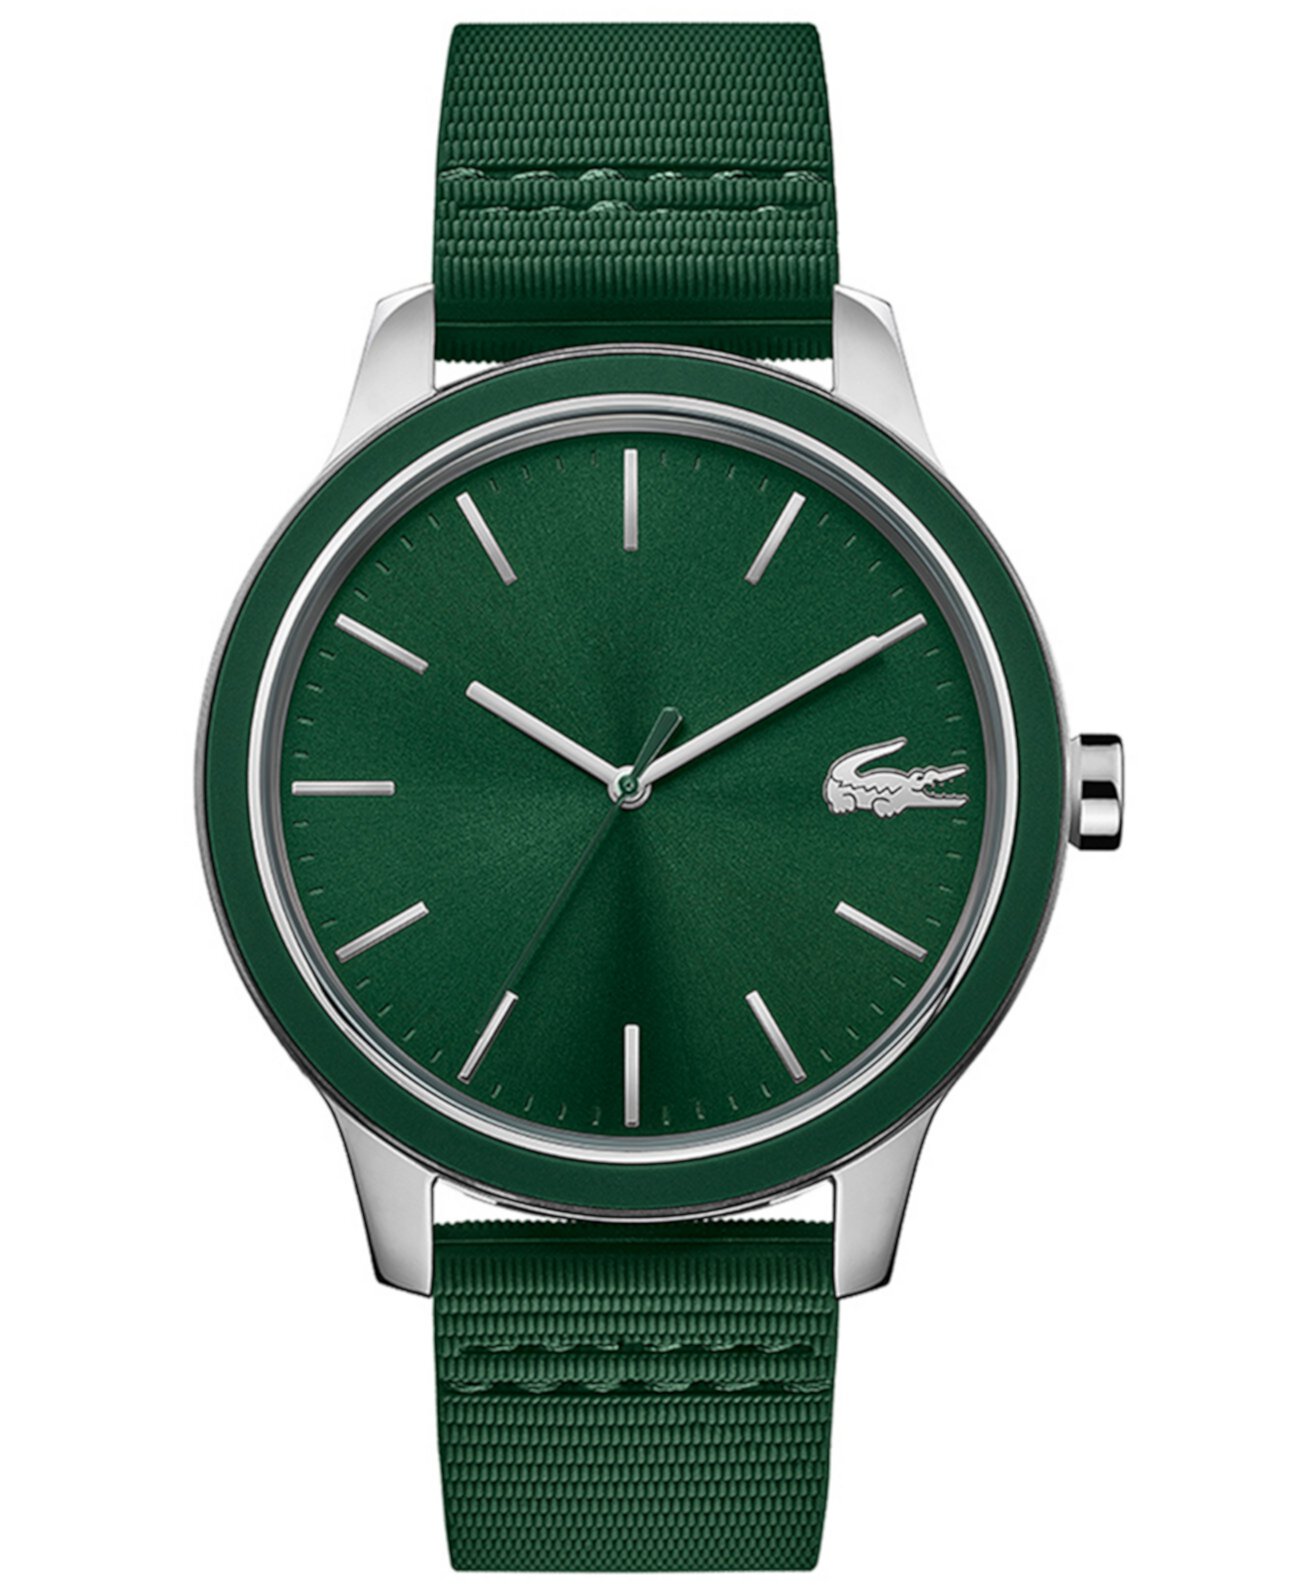 Мужские наручные часы Lacoste 12.12 с зеленым силиконовым ремешком, 44 мм Lacoste